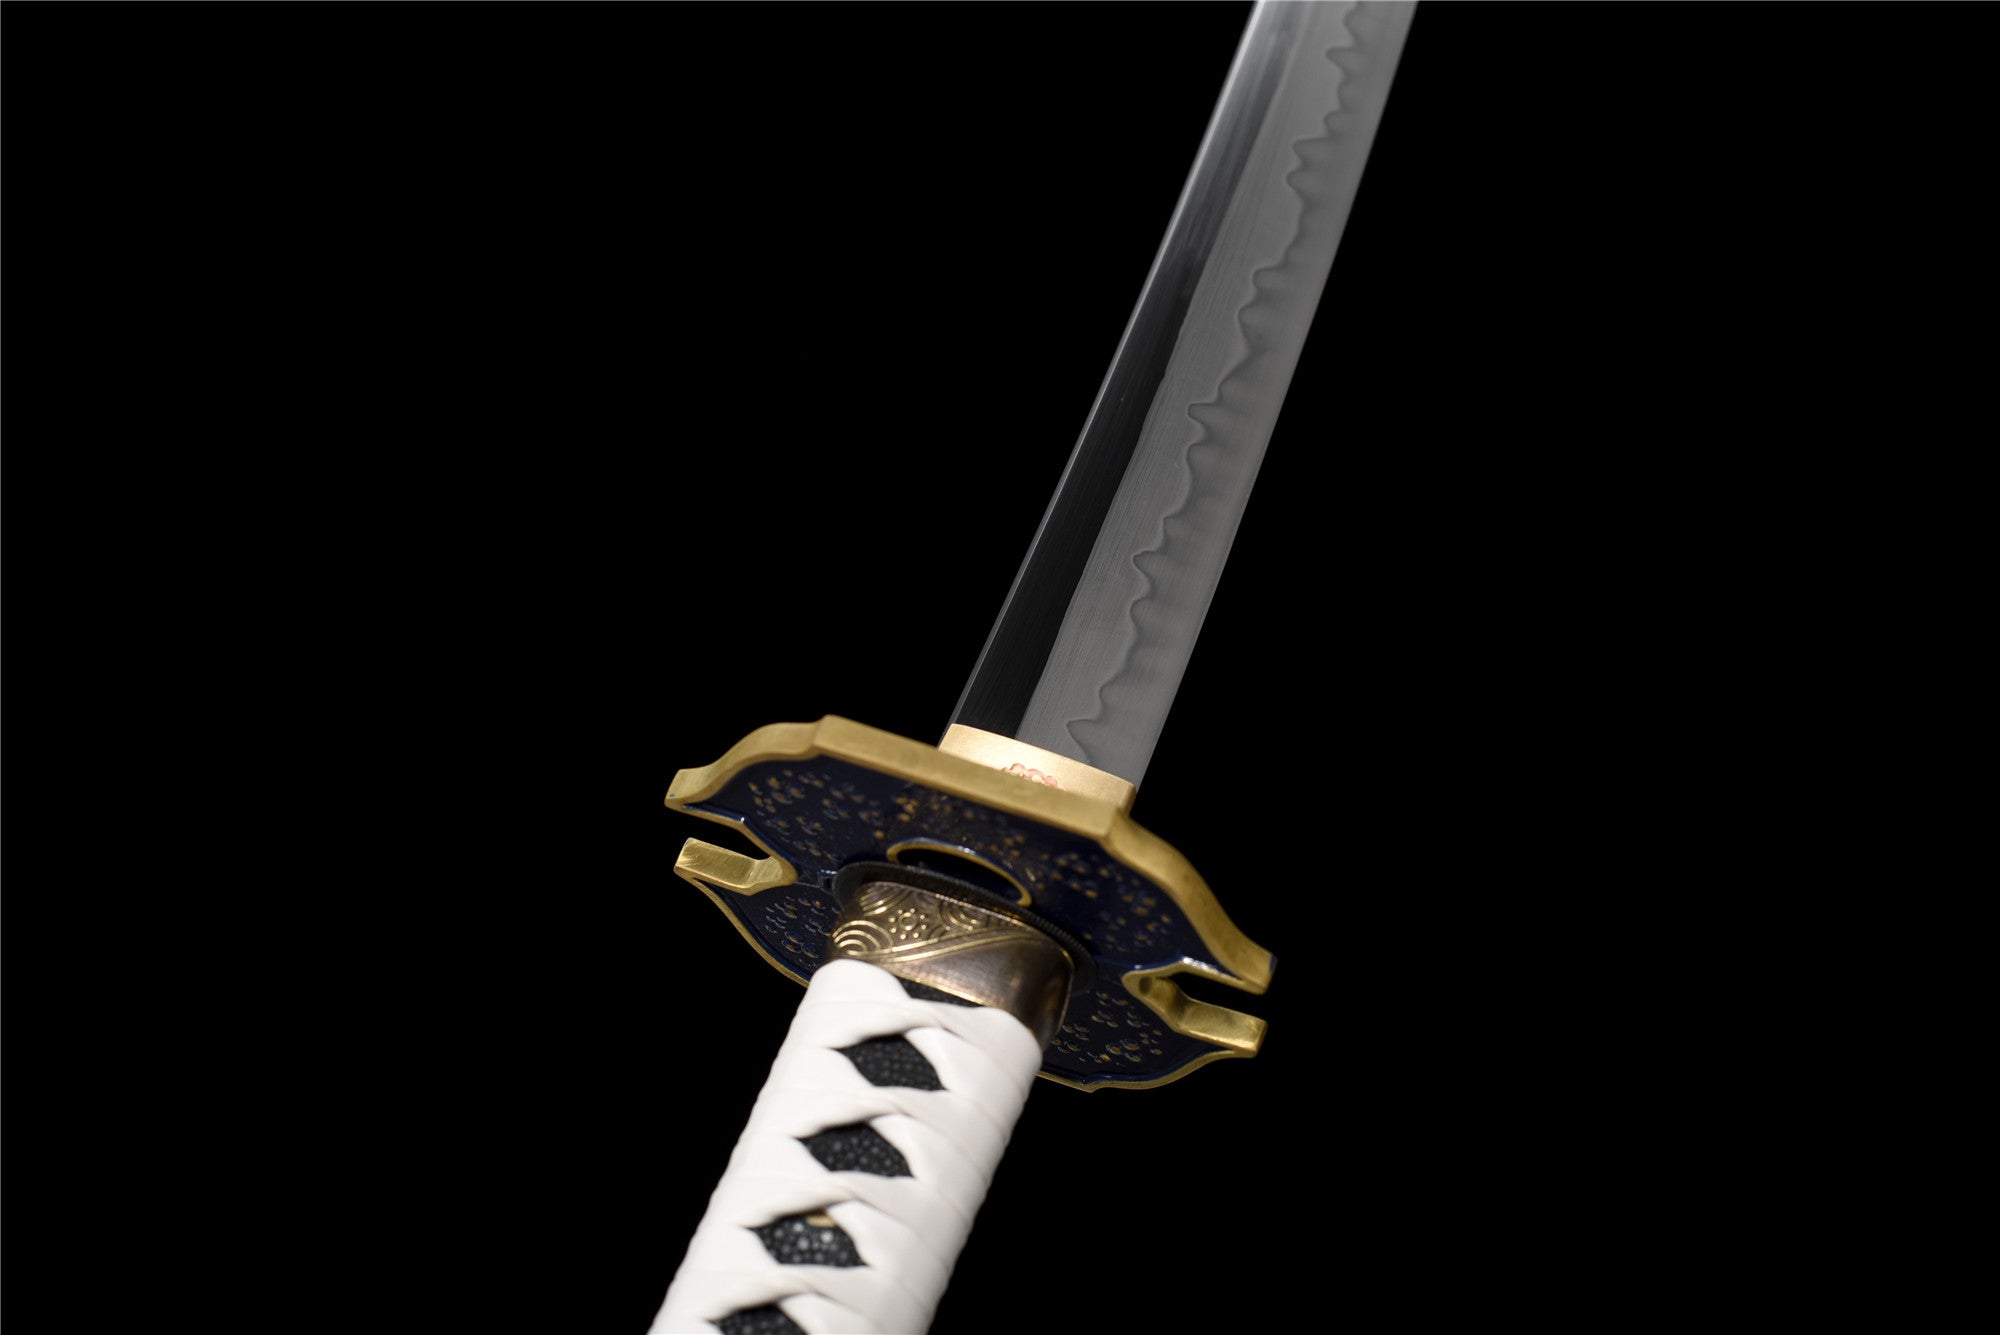 Anime Yamato Katana Schwert, Devil May Cry 5 Vergil Schwert, echtes handgefertigtes japanisches Samurai-Schwert, T10 Stahlton, gehärtet mit Hamon